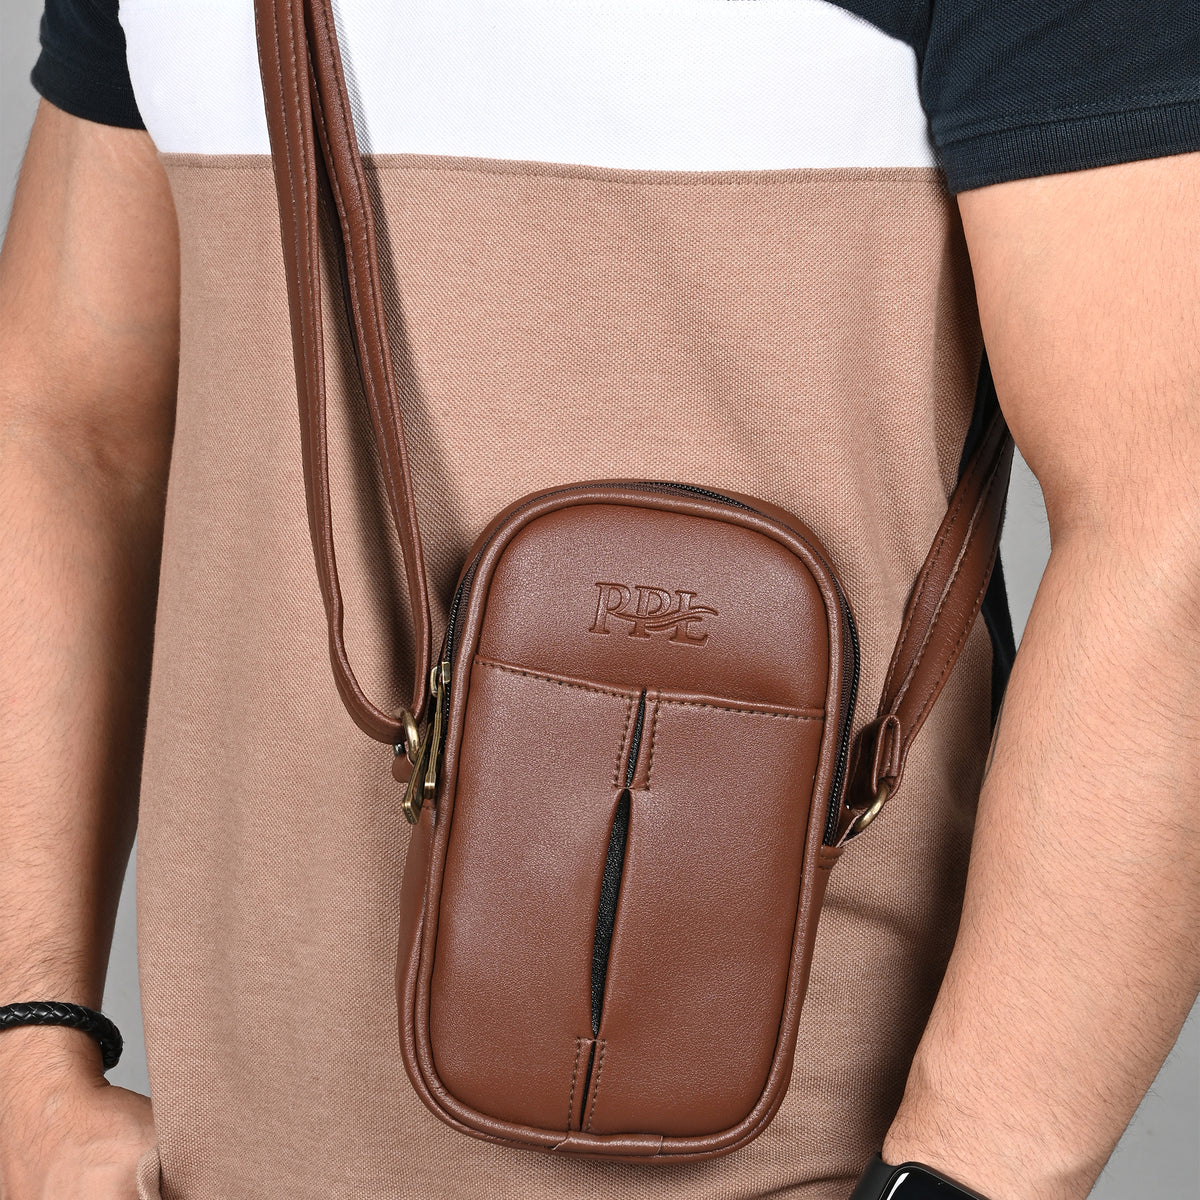 Pramadda Pure Luxury Stylish Square Crossbody Leather Sling Bag